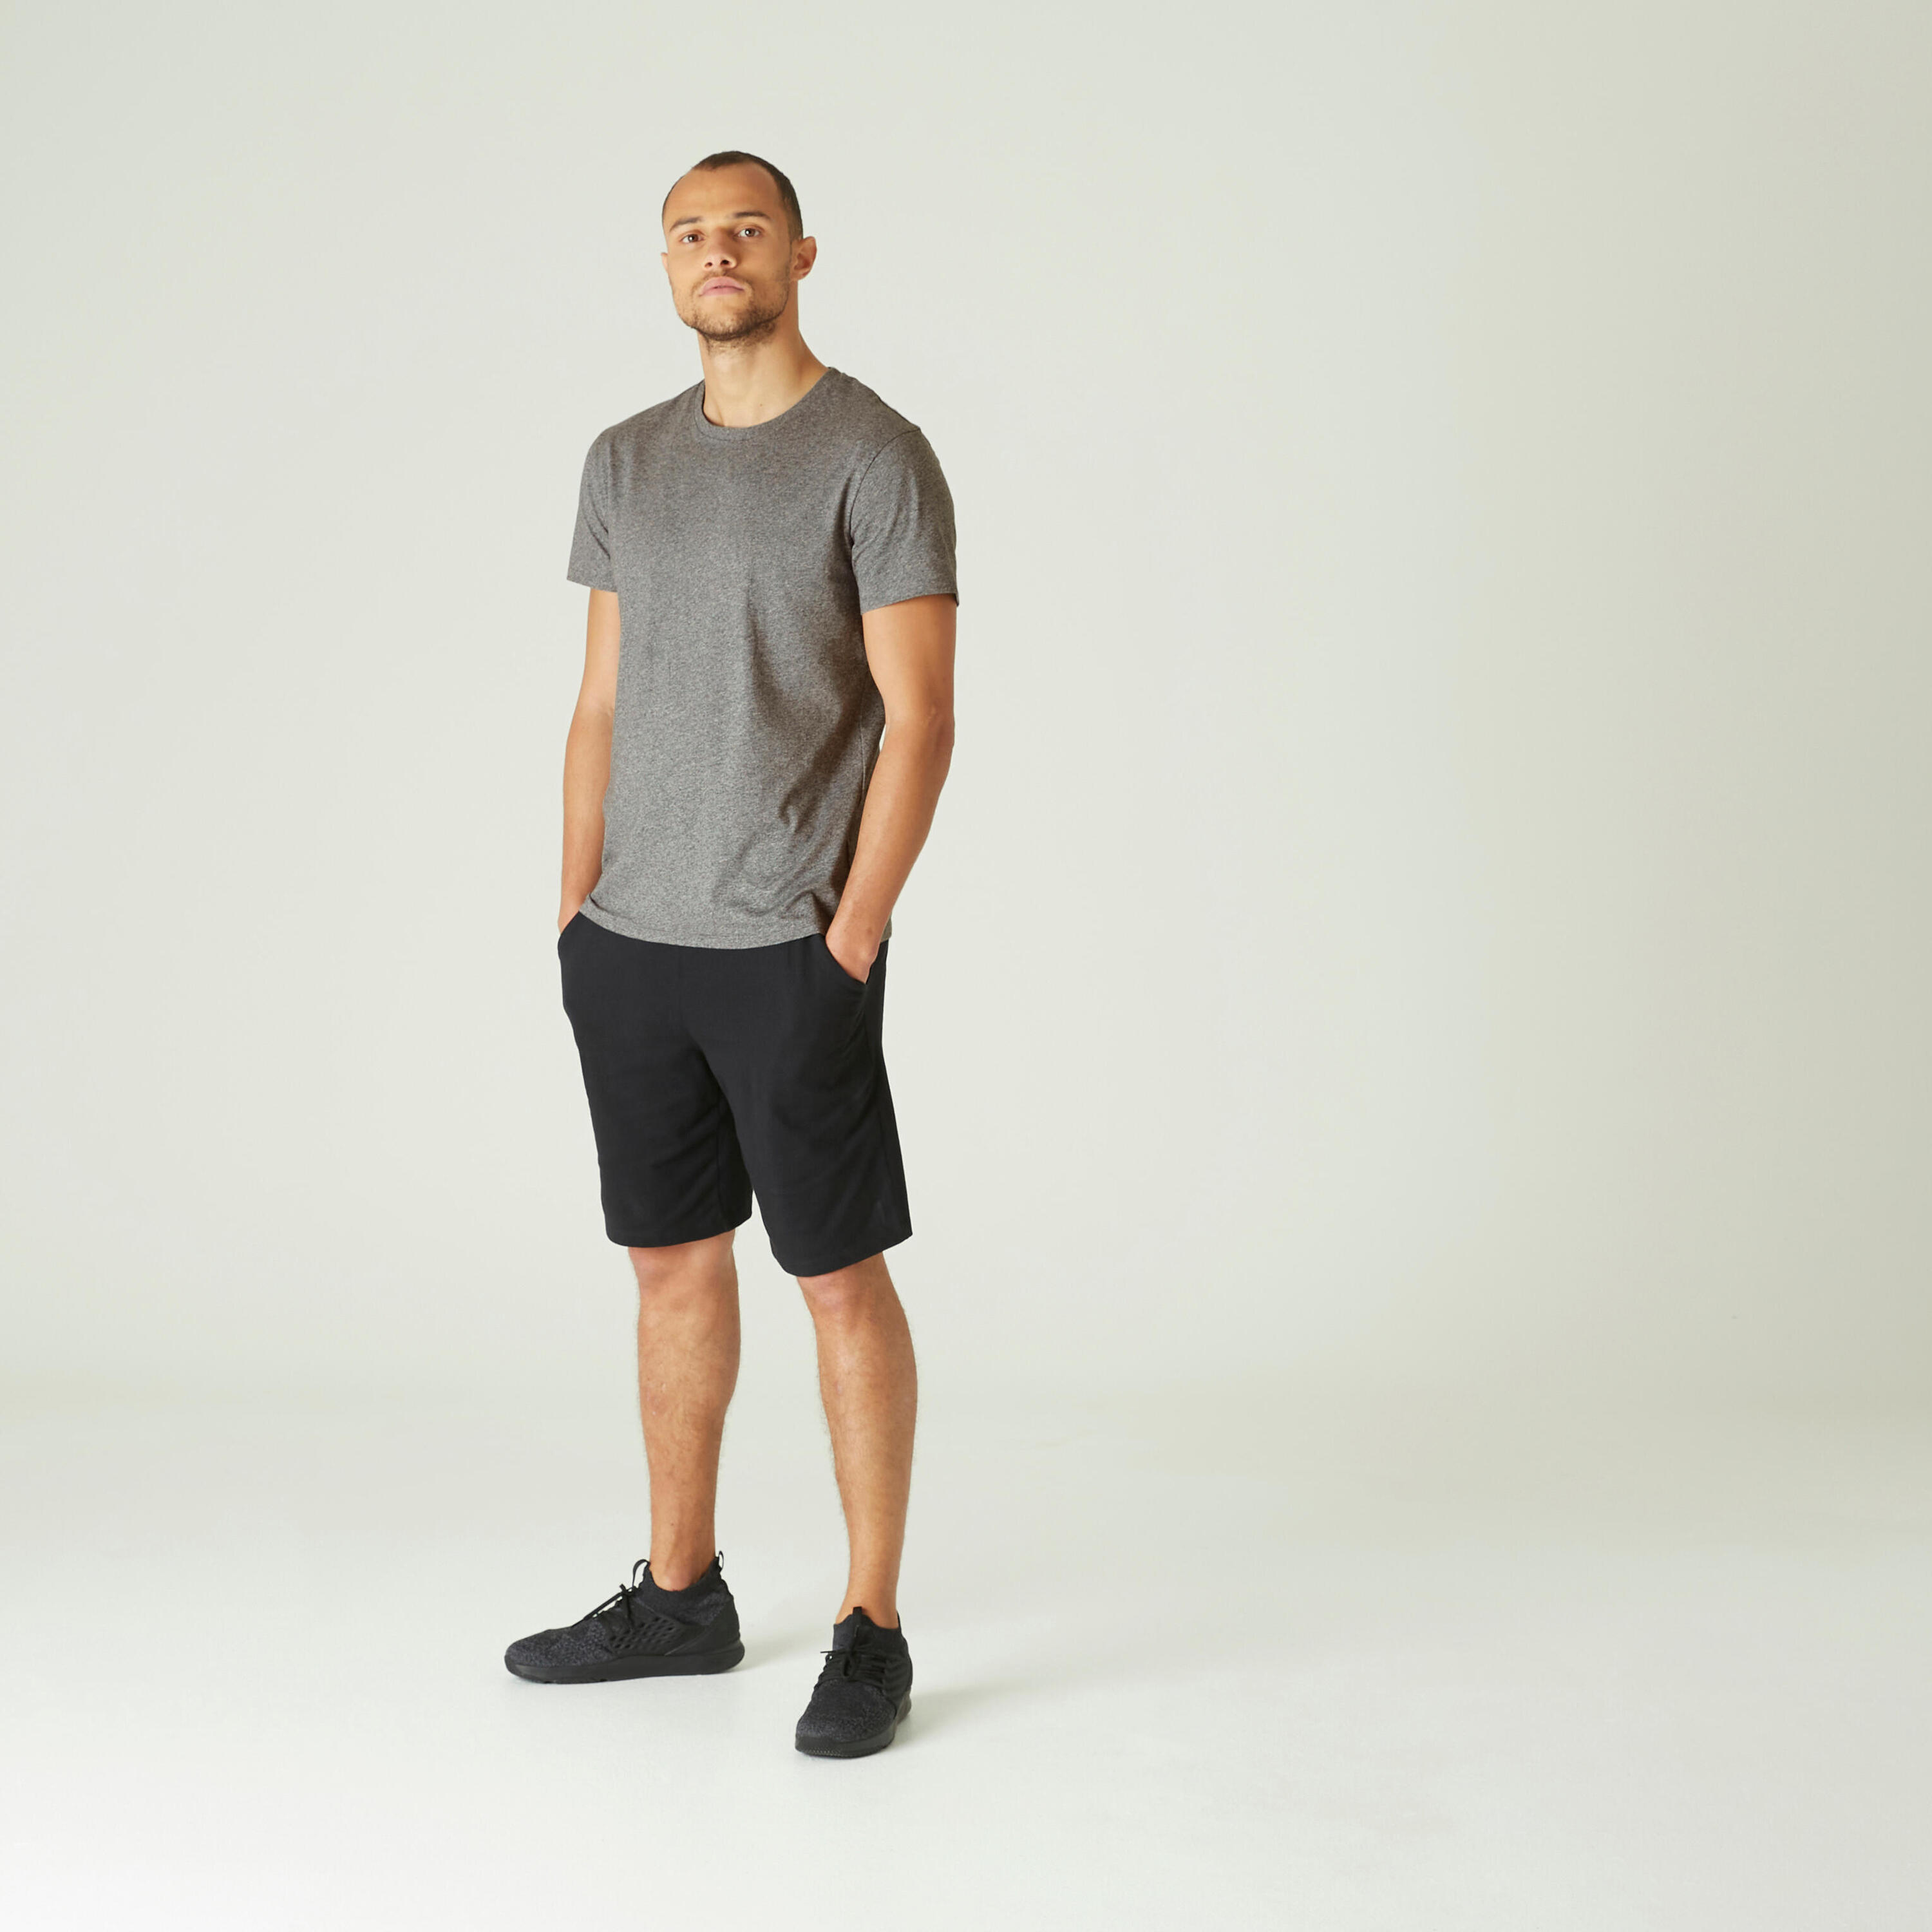 Men's Fitness T-Shirt 100 Sportee - Grey 2/4